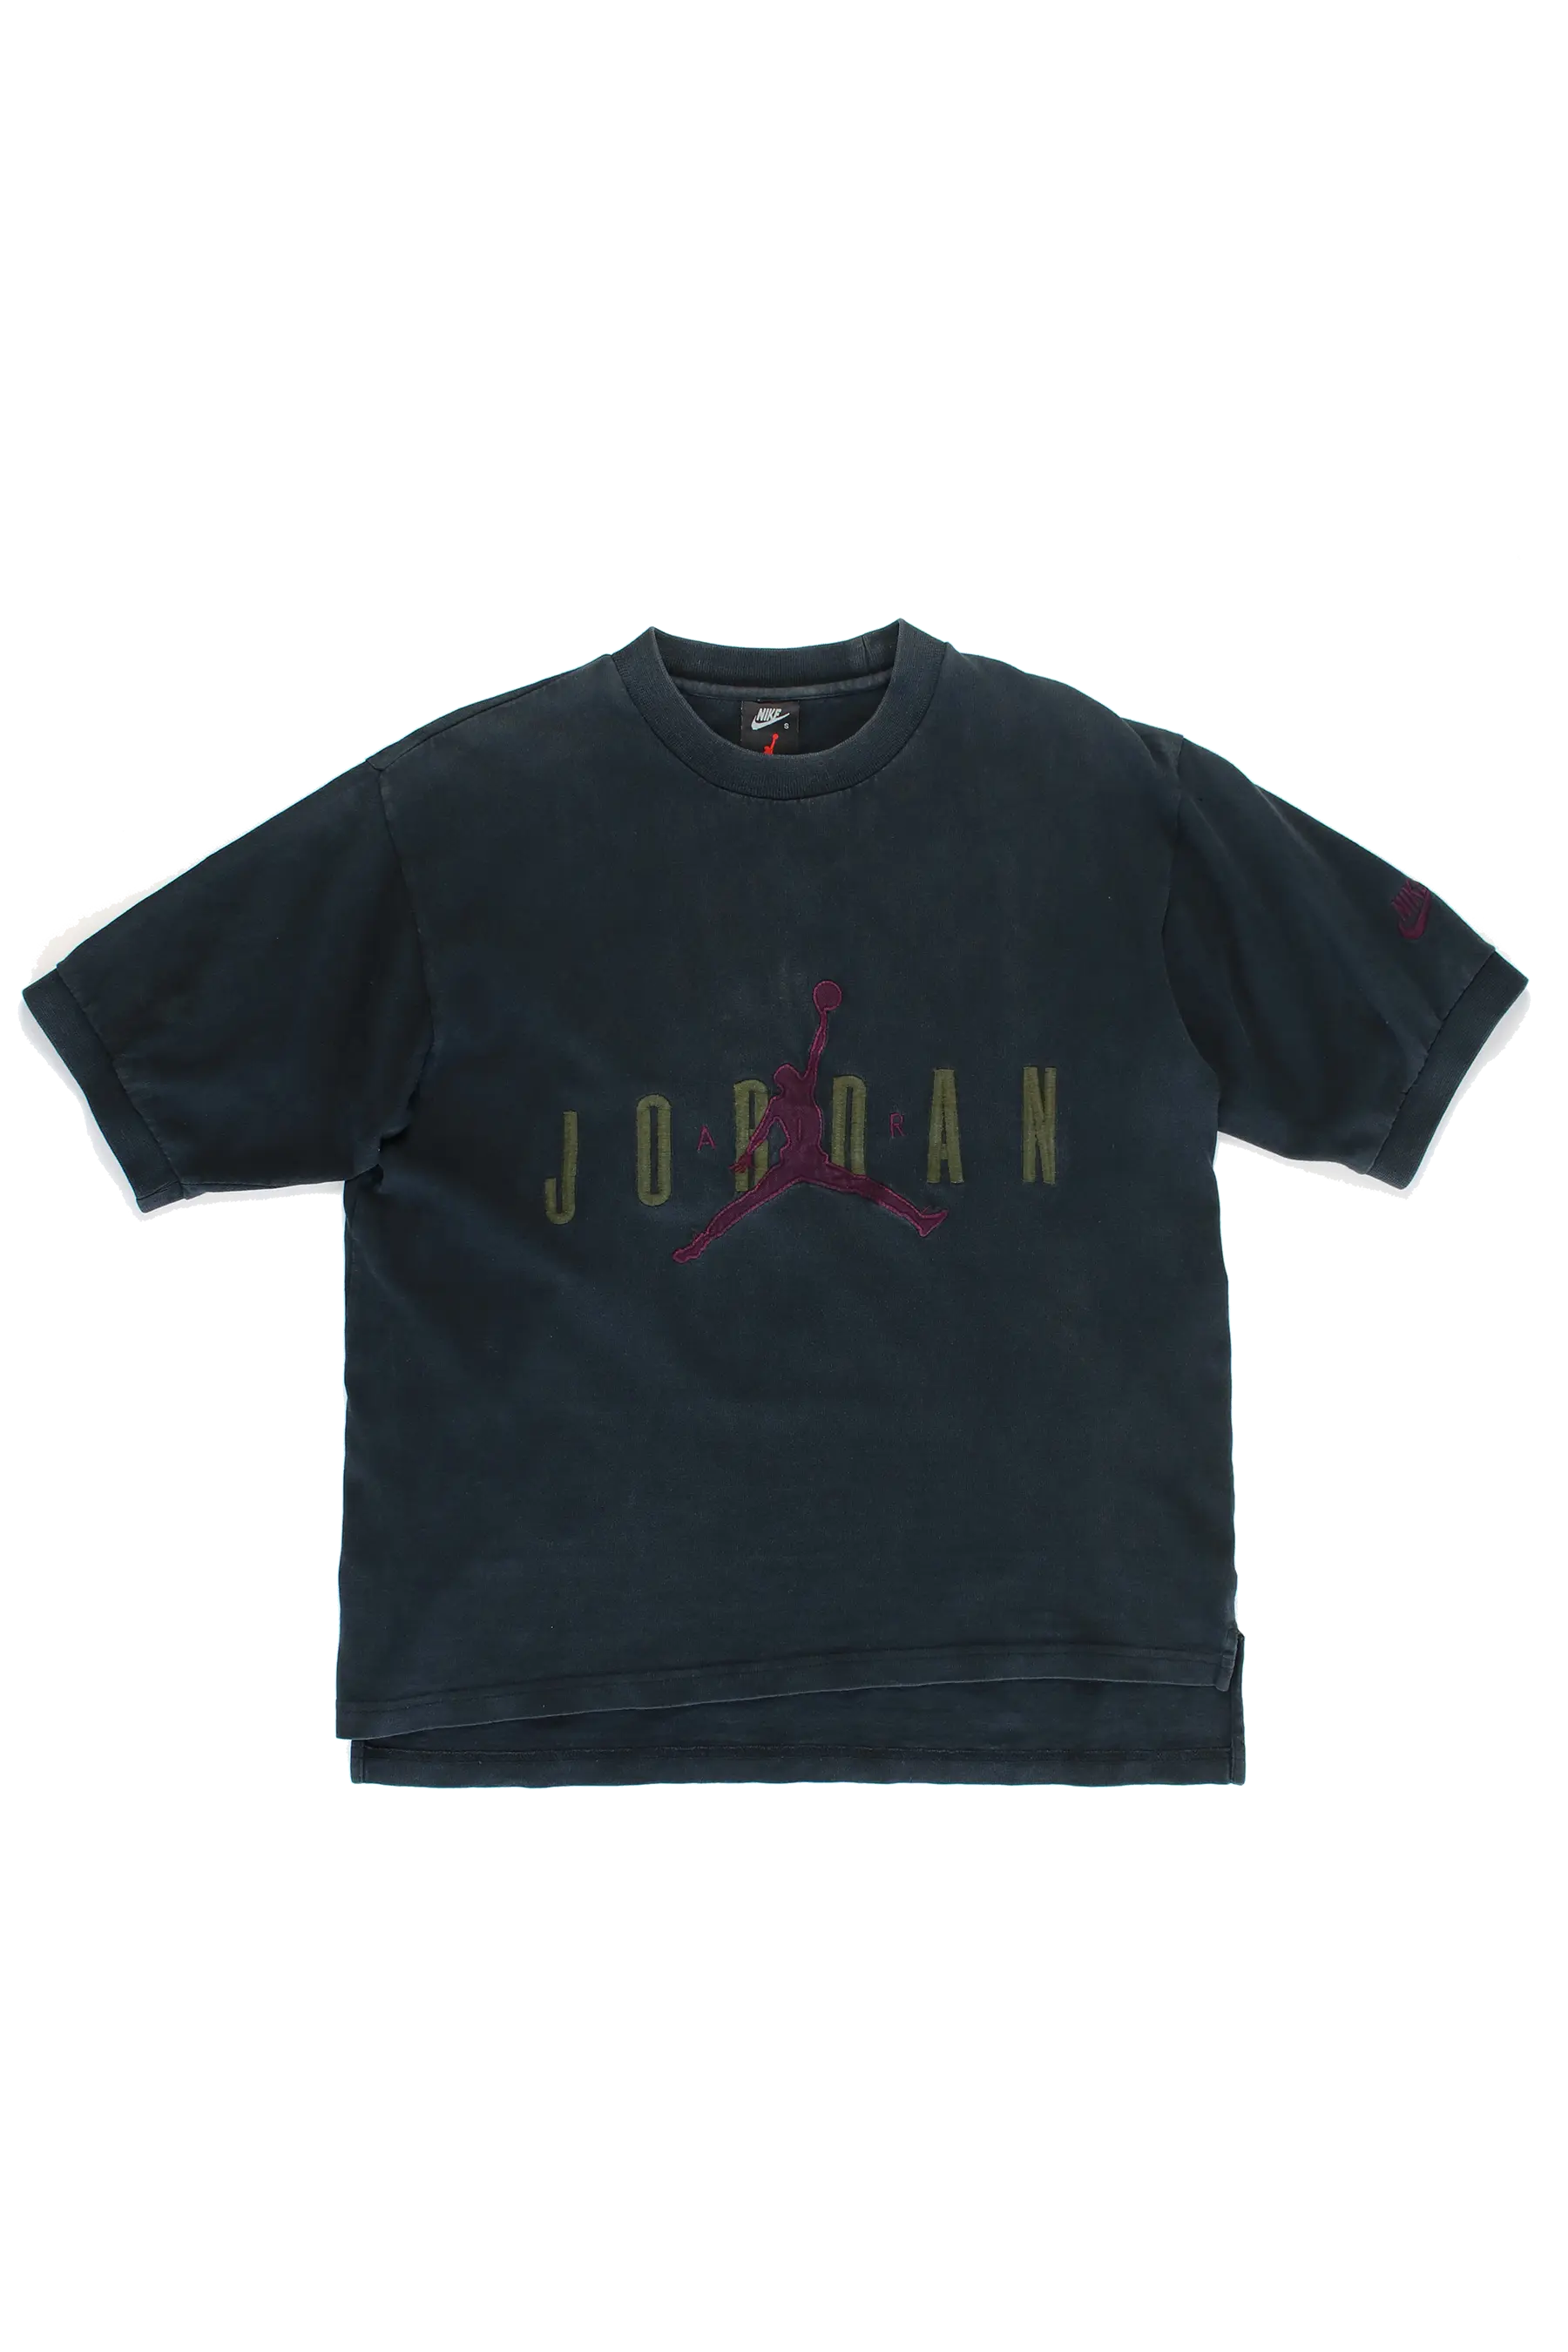 Jordan 90s Heavy T-Shirt